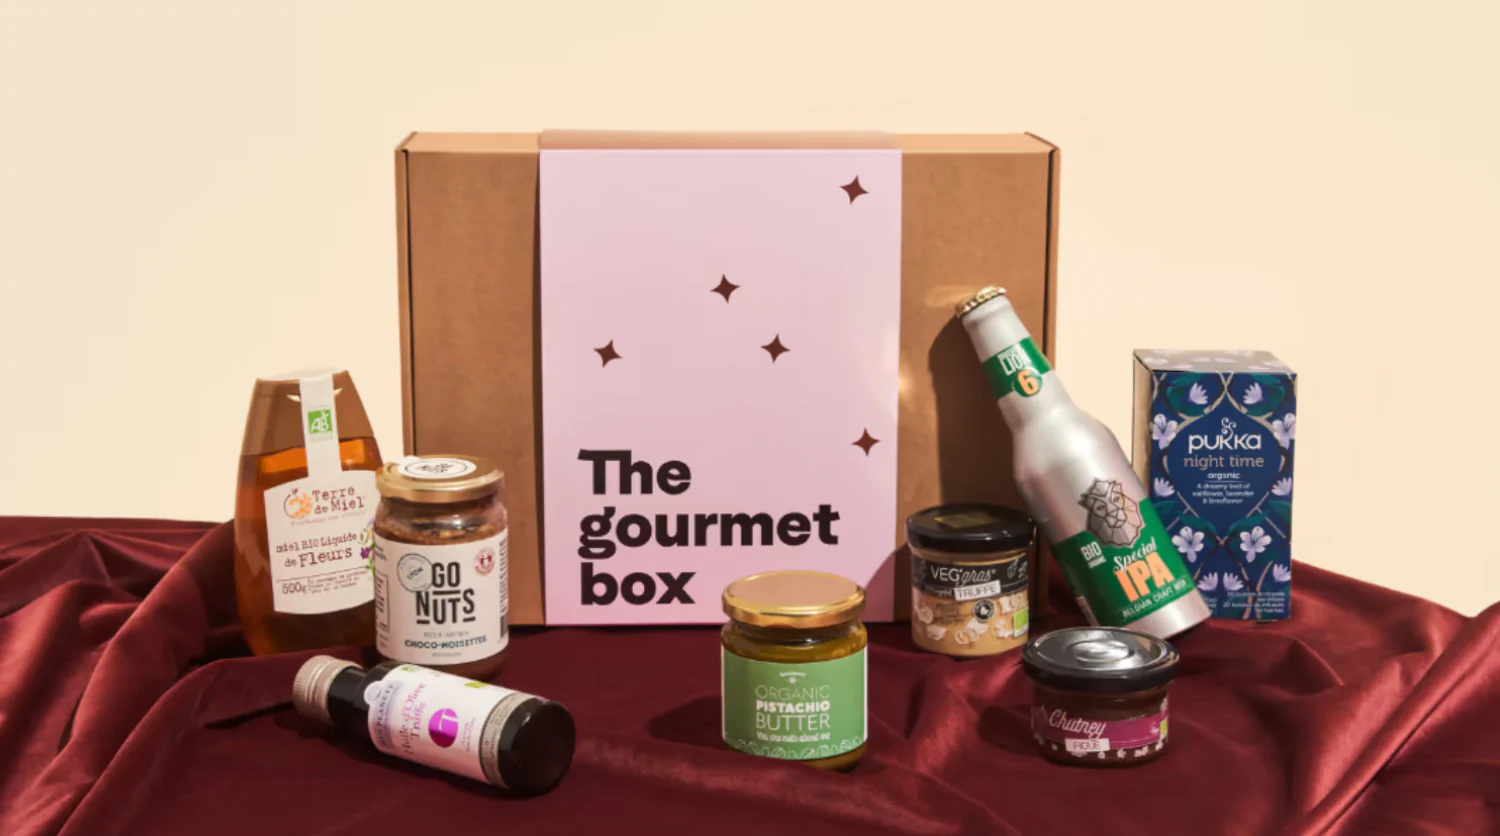 The Gourmet Box, l’assortiment divinement gourmand pour sublimer repas et apéros pendant les fêtes.